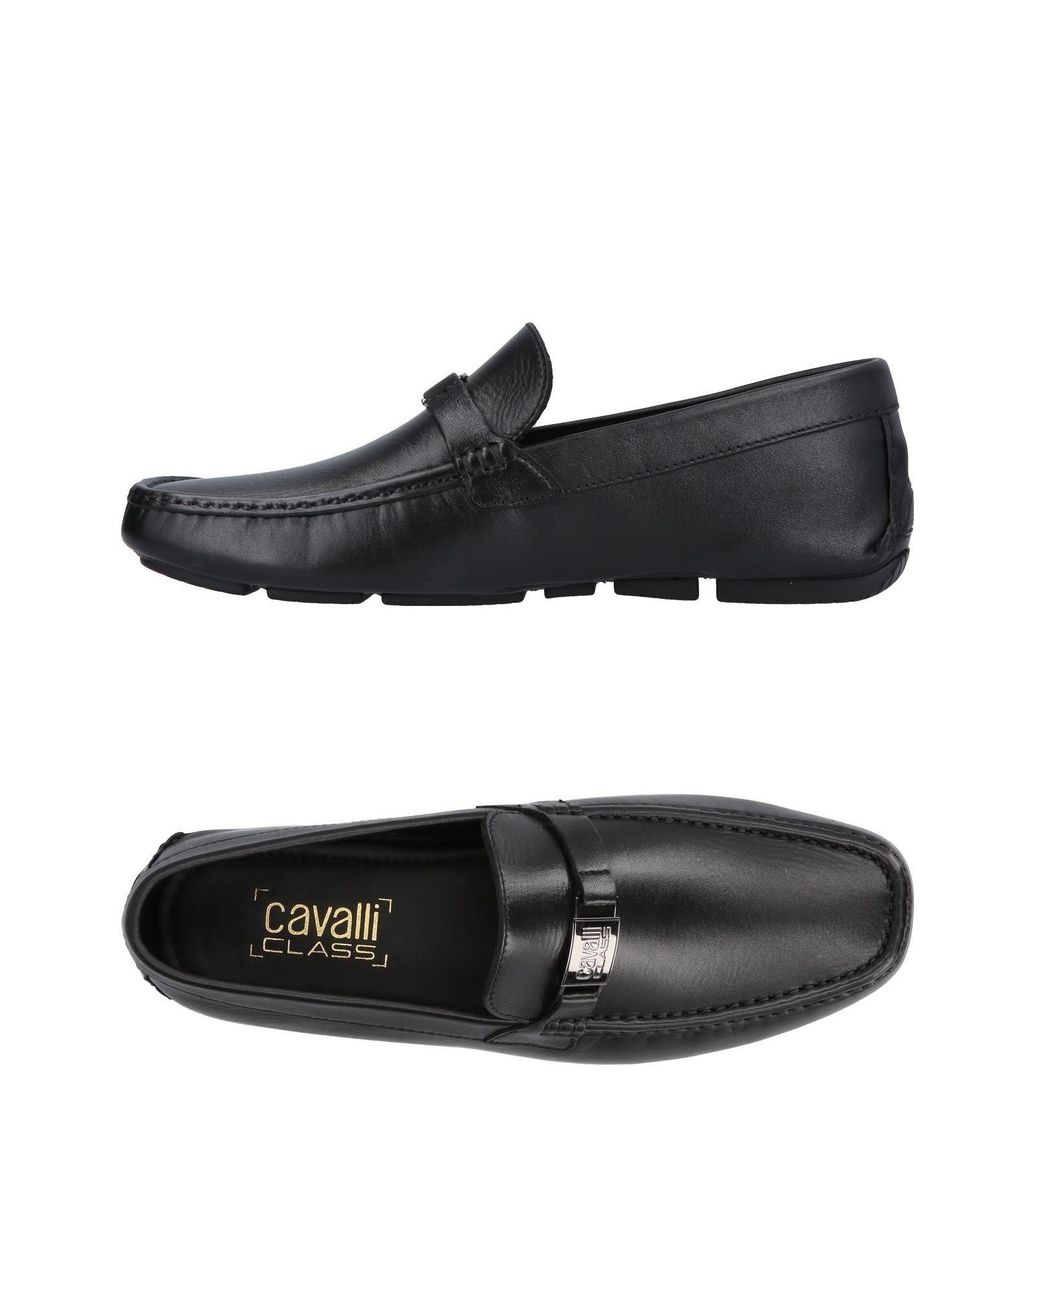 Mocasines Class Roberto Cavalli de Cuero de color Negro para hombre Hombre Zapatos de Zapatos sin cordones de Mocasines 